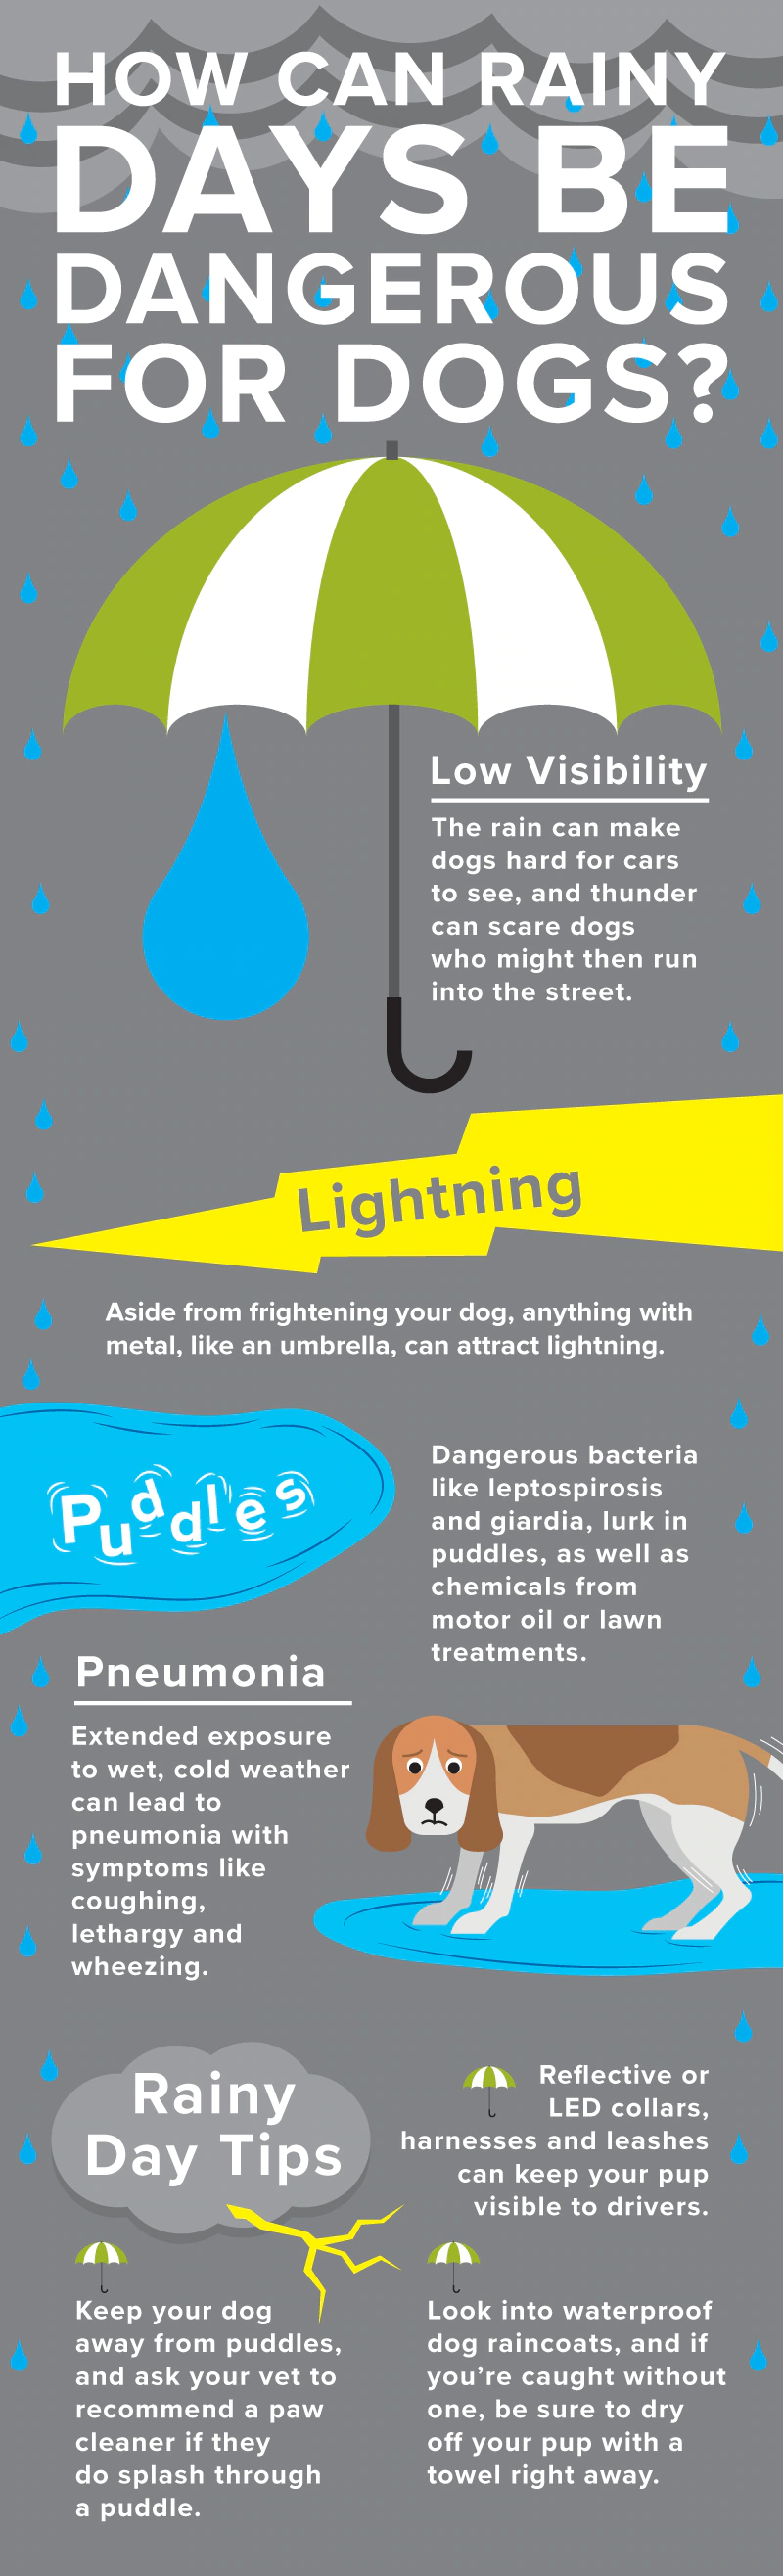 下雨天宠物的安全风险包括钩端螺旋体病、贾第鞭毛虫病、能见度低和肺炎。